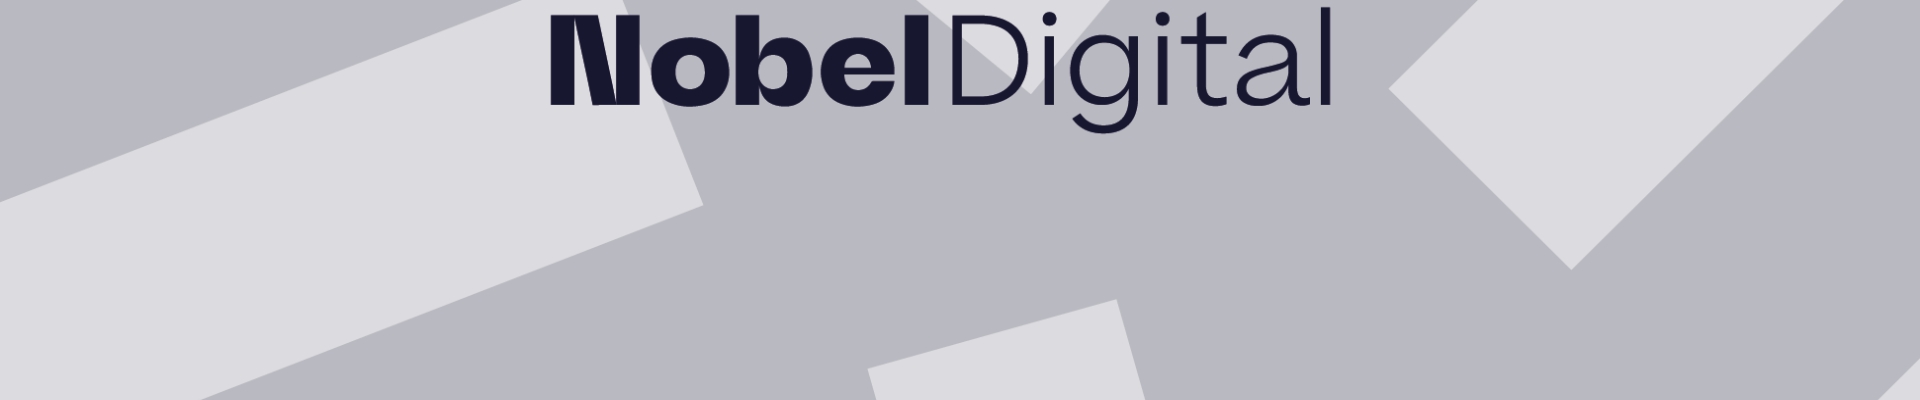 Suurim mainega ettevõte NOBEL DIGITAL OÜ, maineskoor 6210, aktiivseid äriseoseid 3. Tegutseb peamiselt valdkonnas: Reklaami vahendamine meedias.